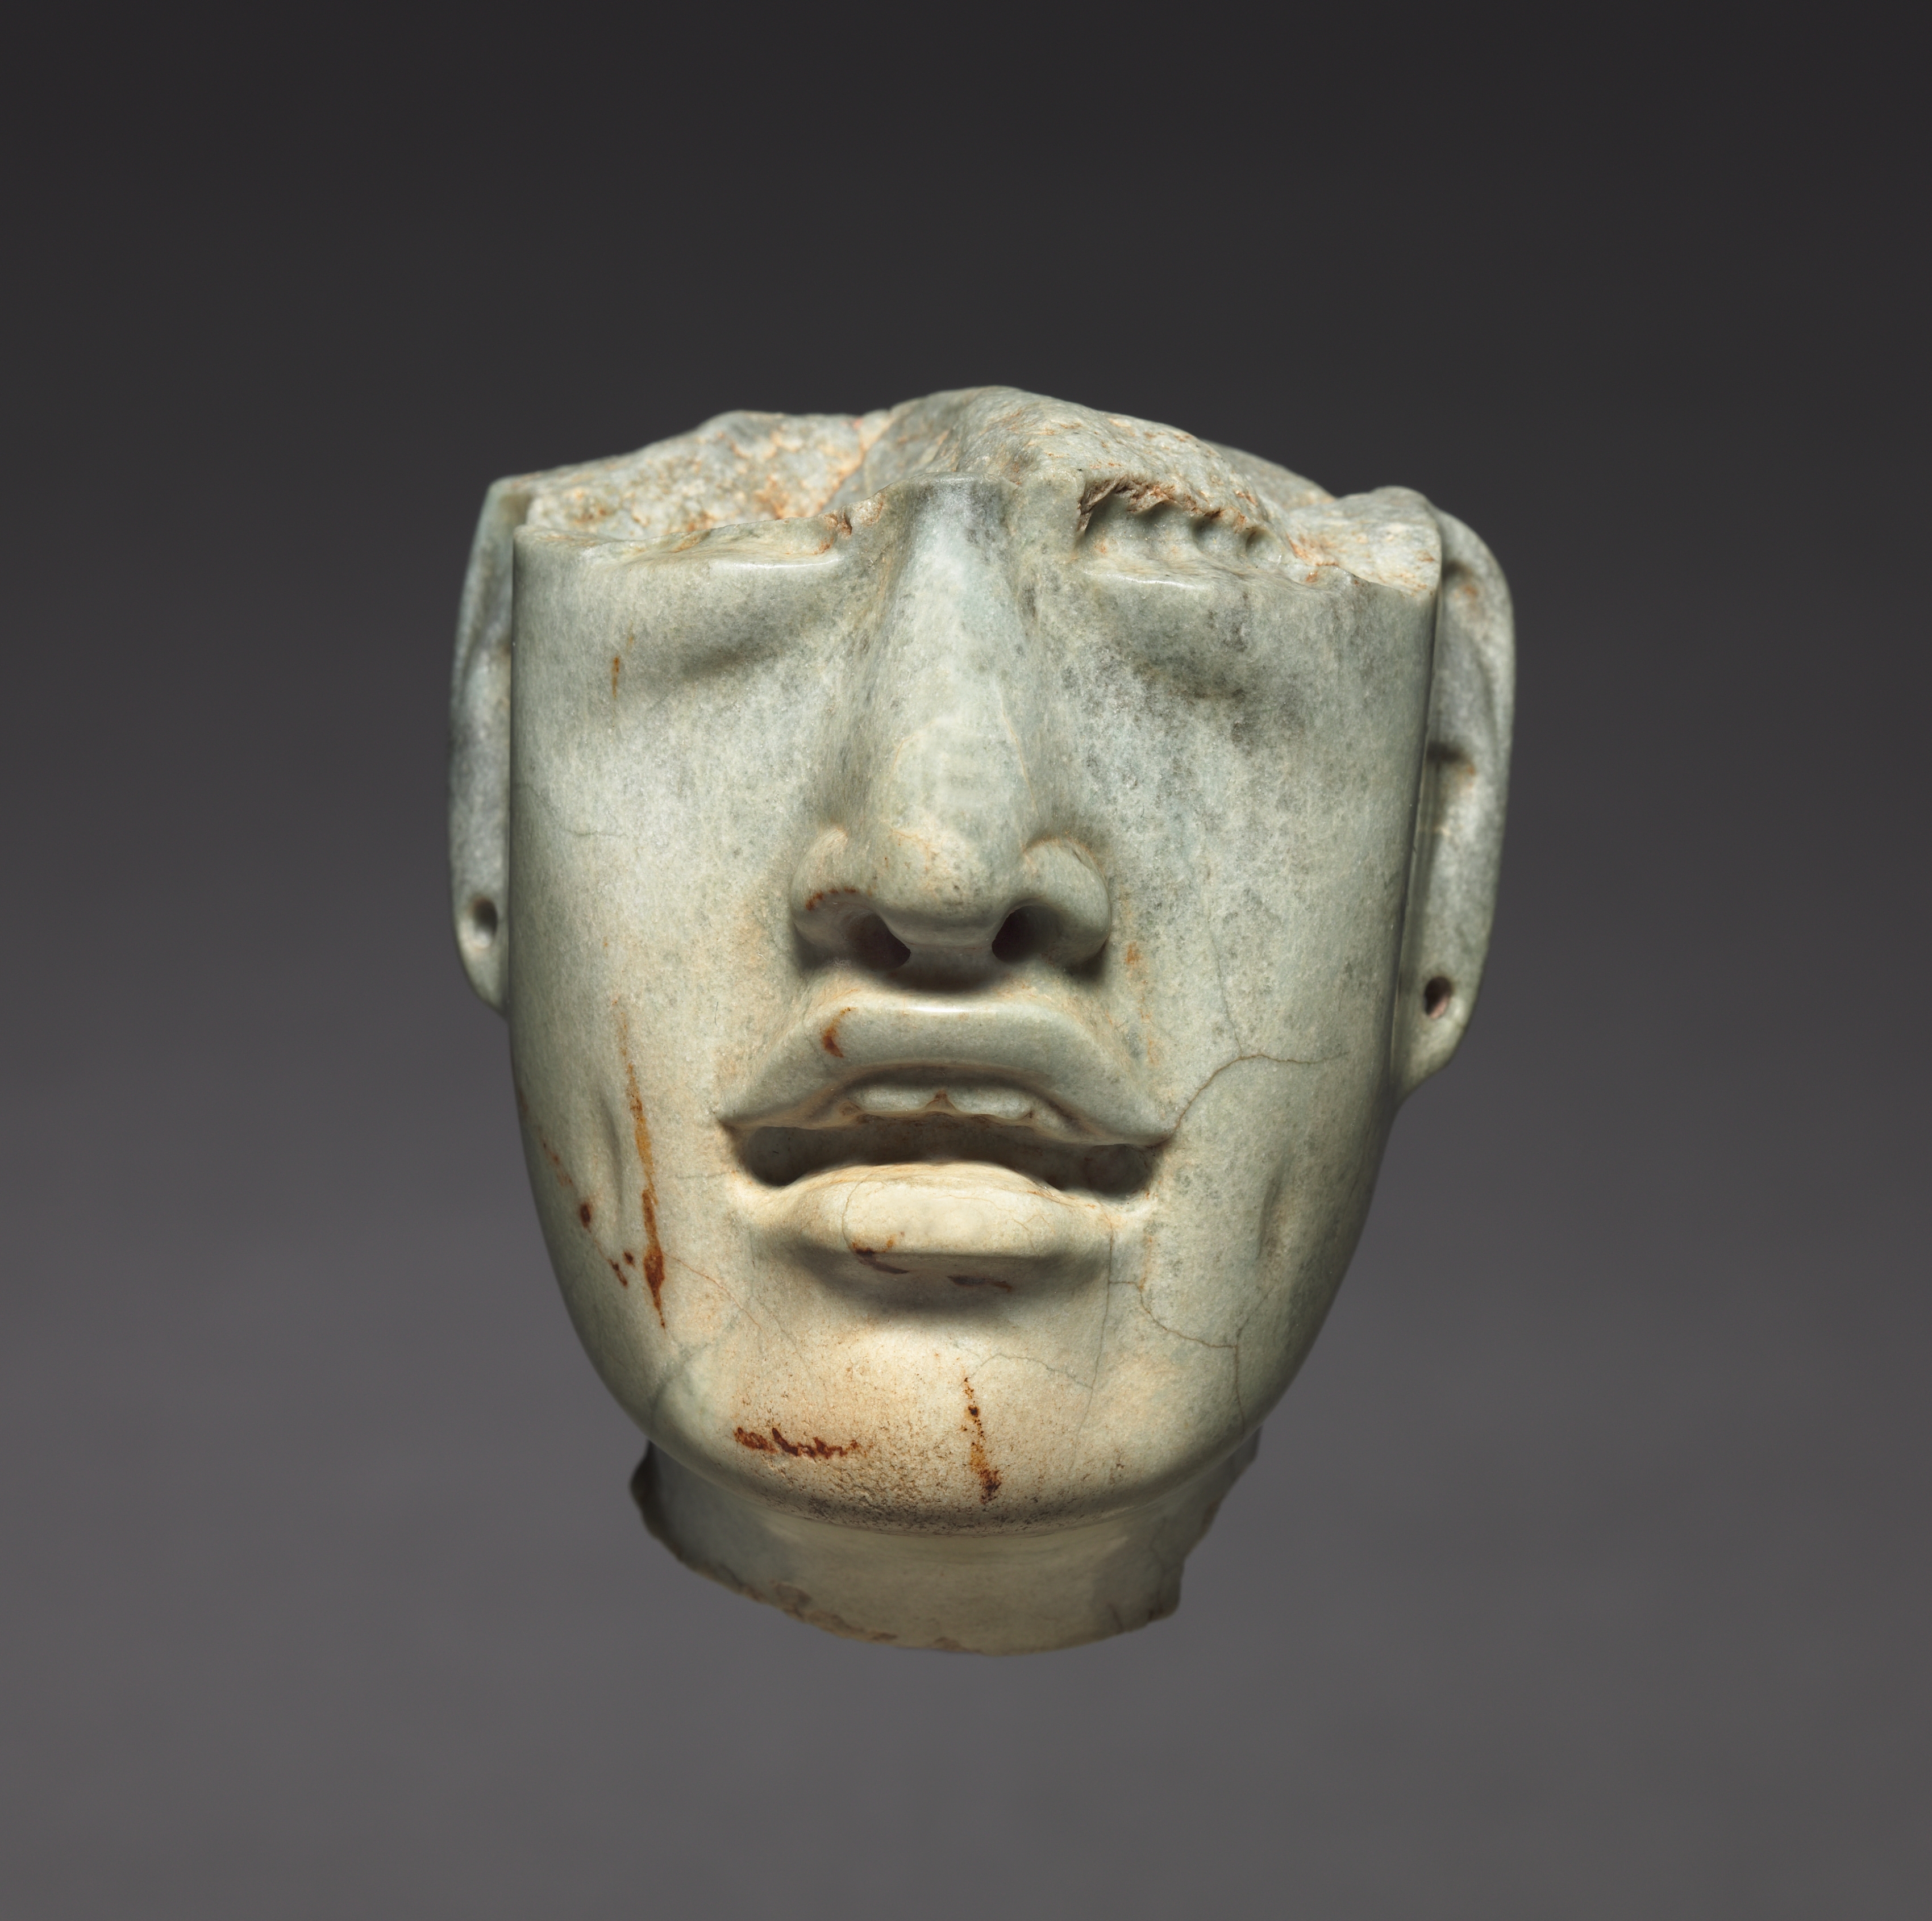 두상 조각(Head Fragment) by Unknown Artist - 기원전 900년-300년경 - 7.4 x 6.2 x 5 cm 